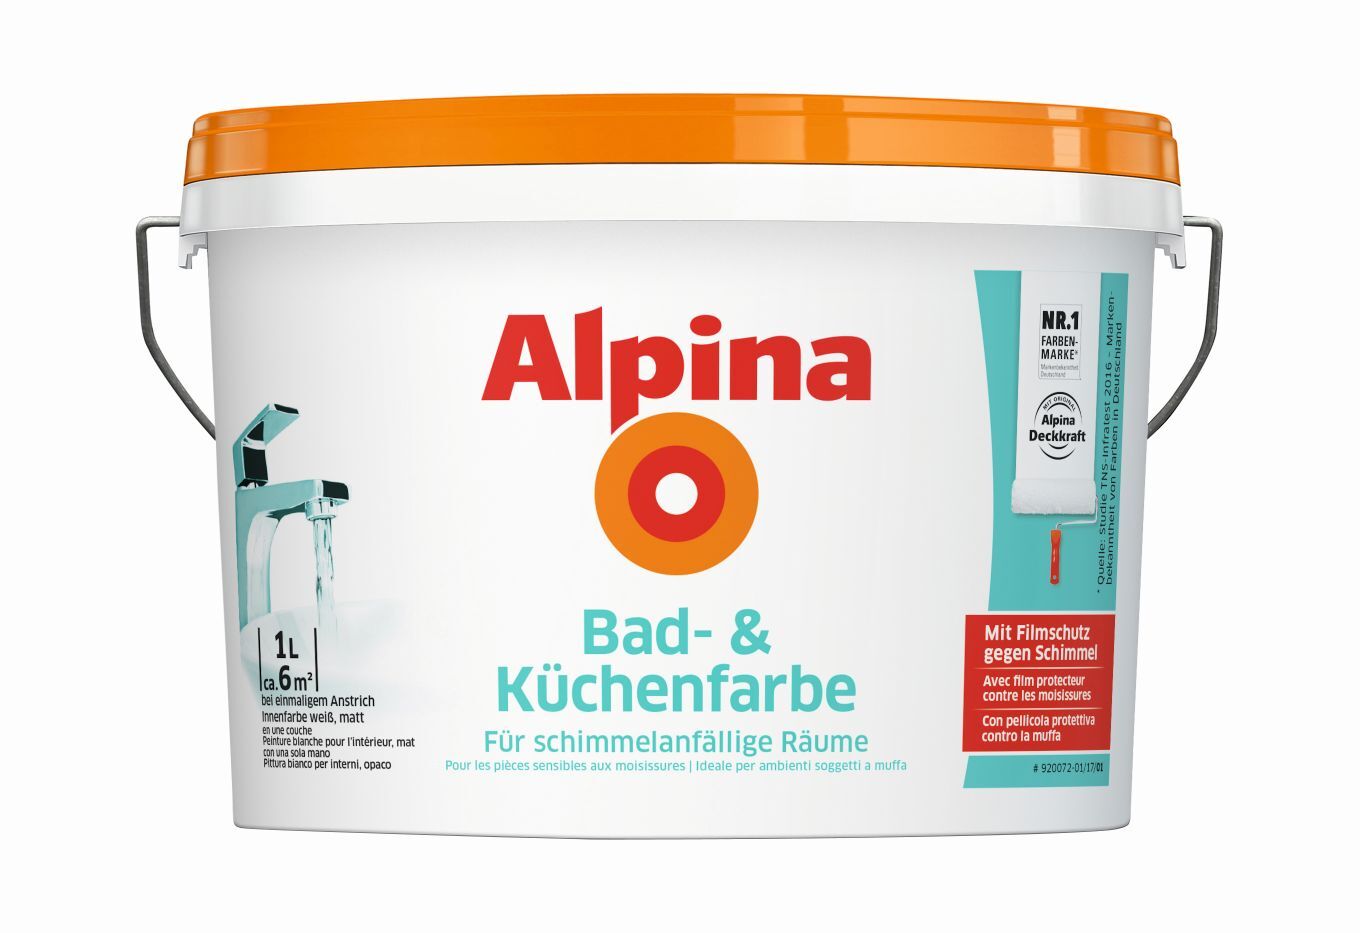 Alpina Bad- & Küchenfarbe